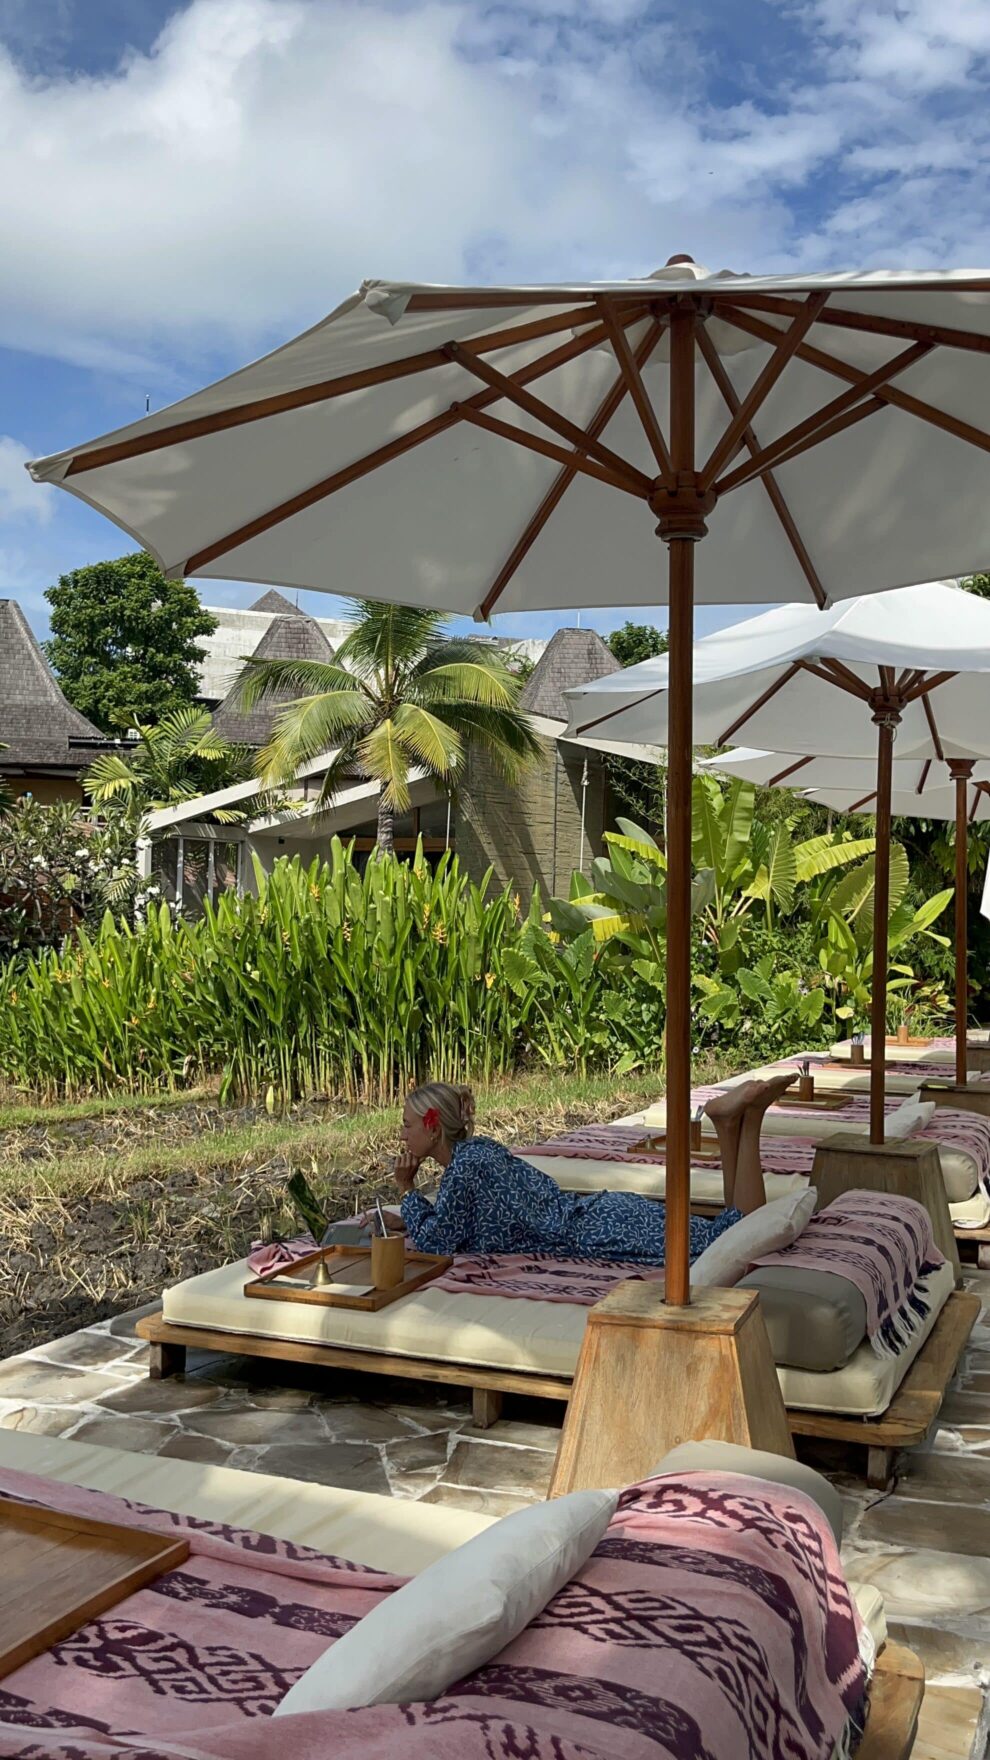 Remote wonen en werken op Bali, Demi Passier  van Barts Boekje deelt de voordelen en nadelen.